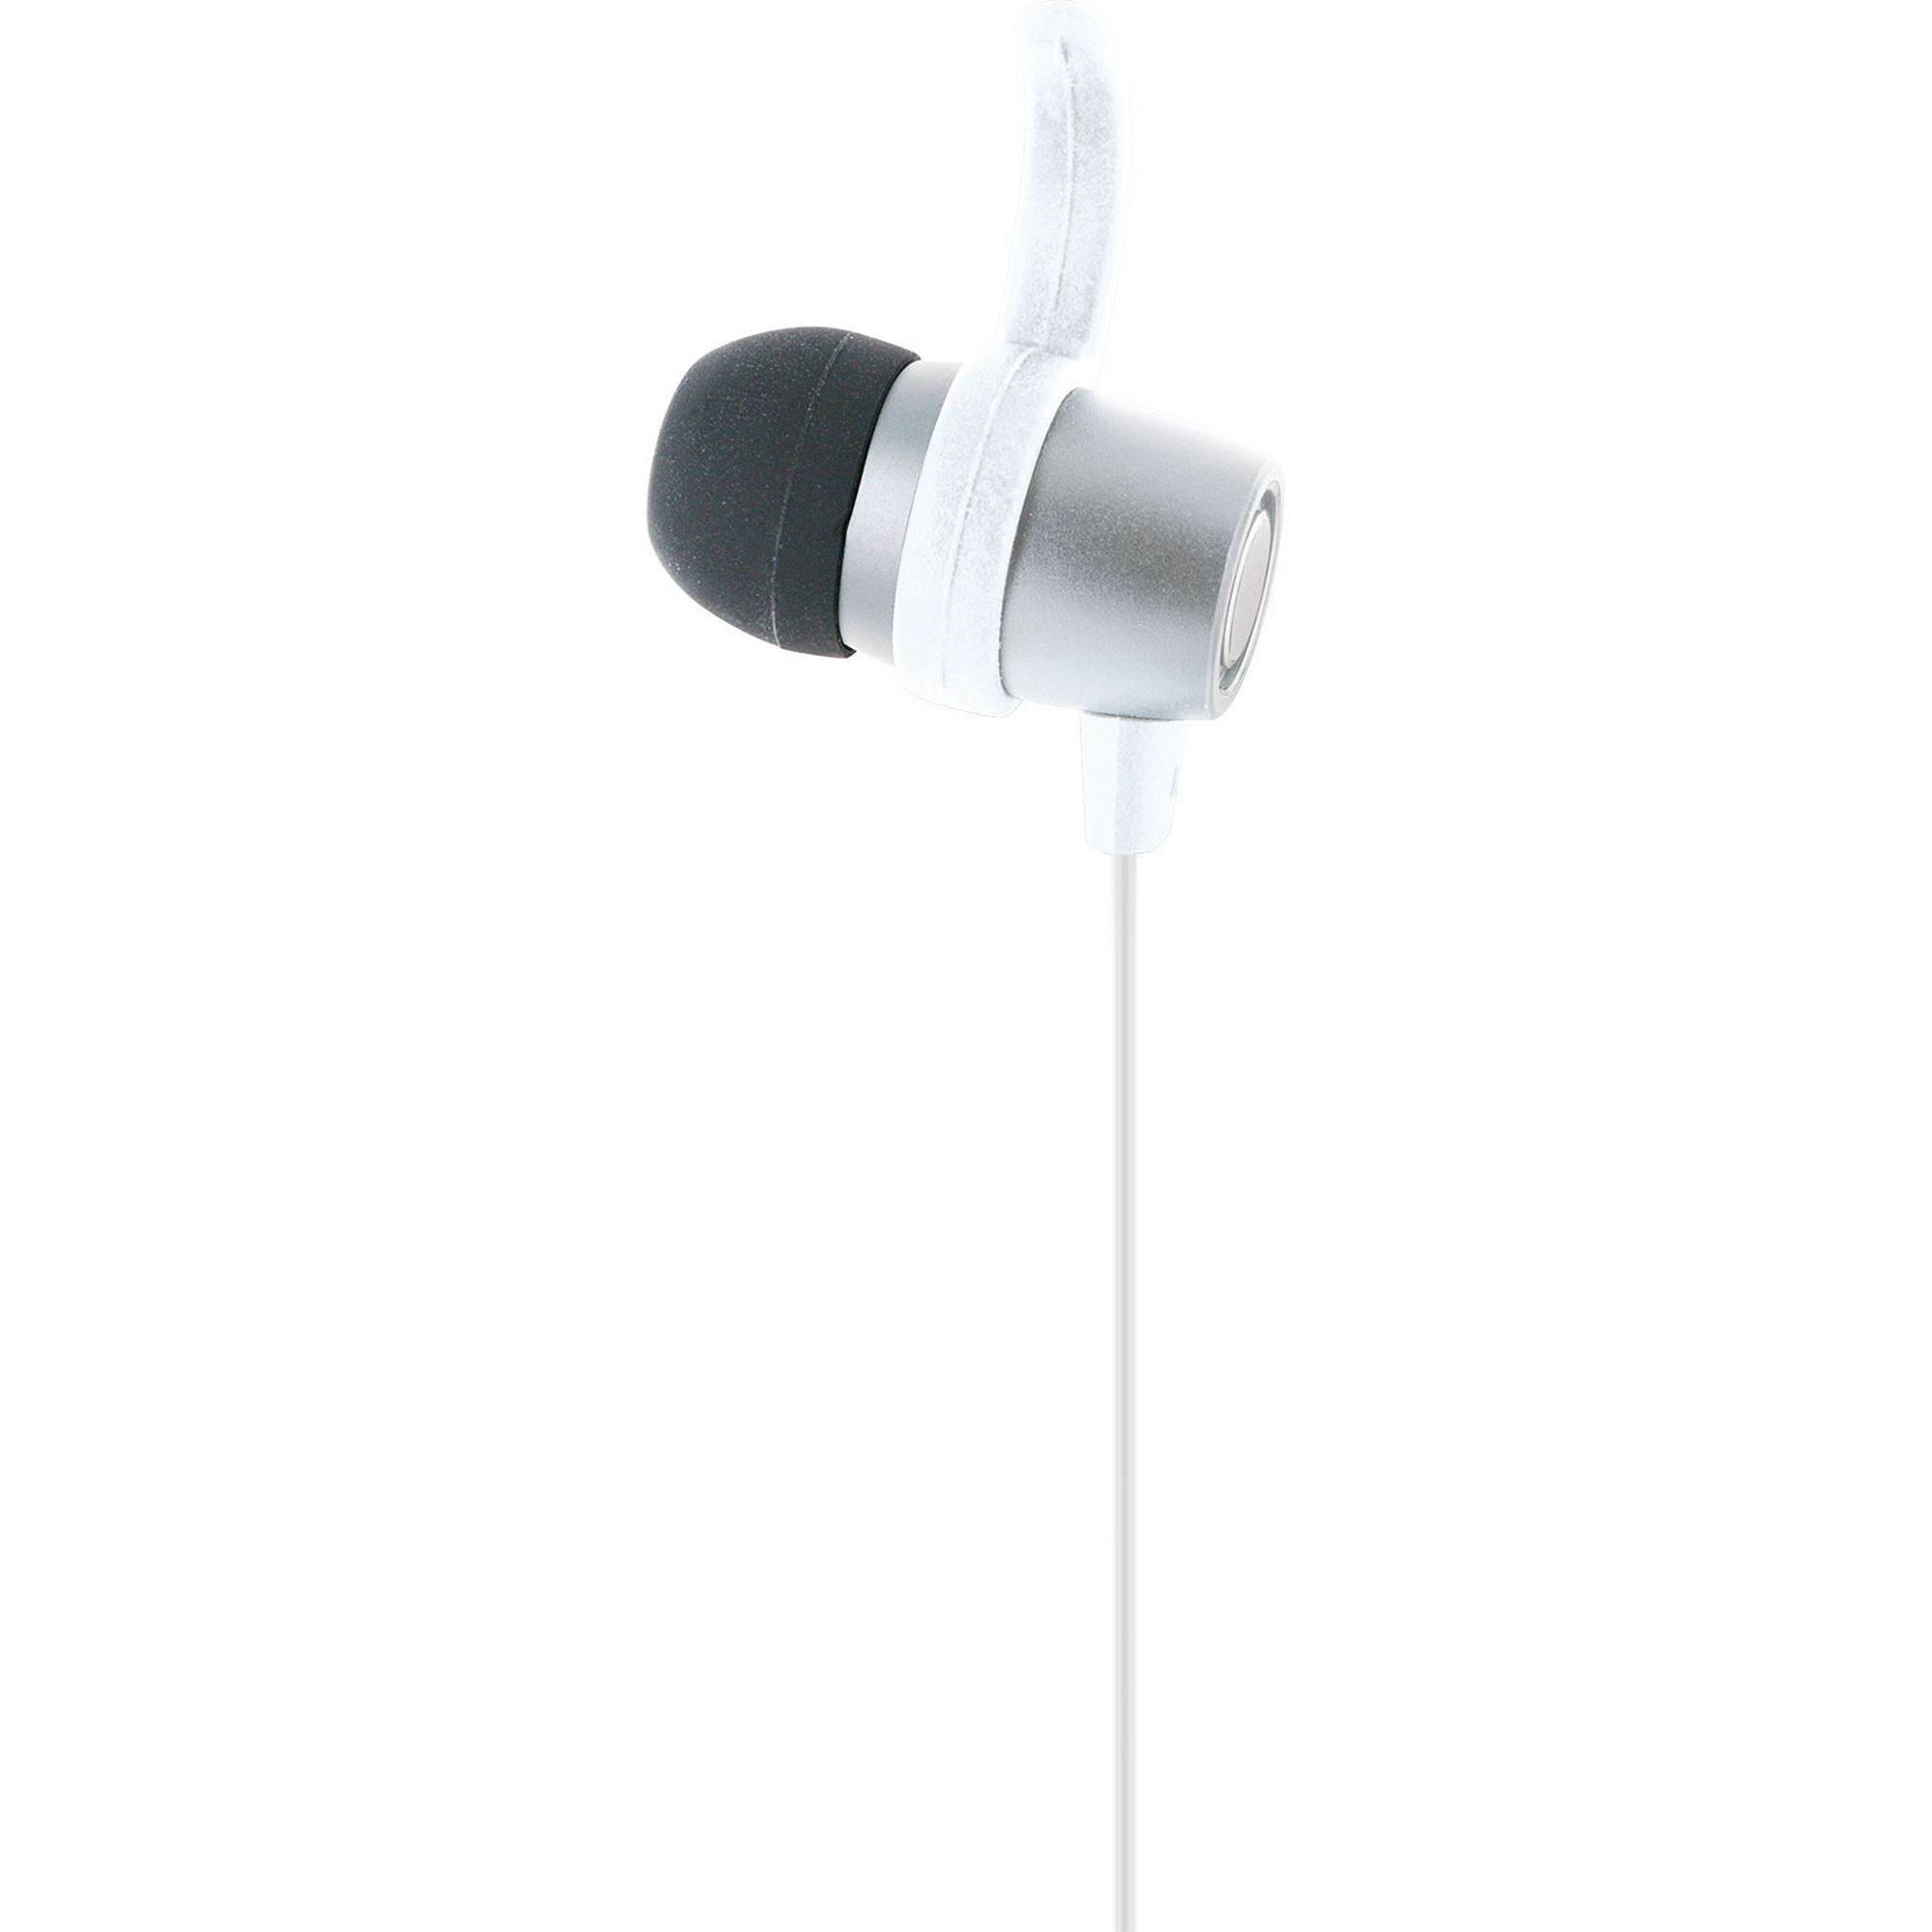 Bluetooth In-Ear-Kopfhörer mit Slimkabel und Mikrofon + product picture